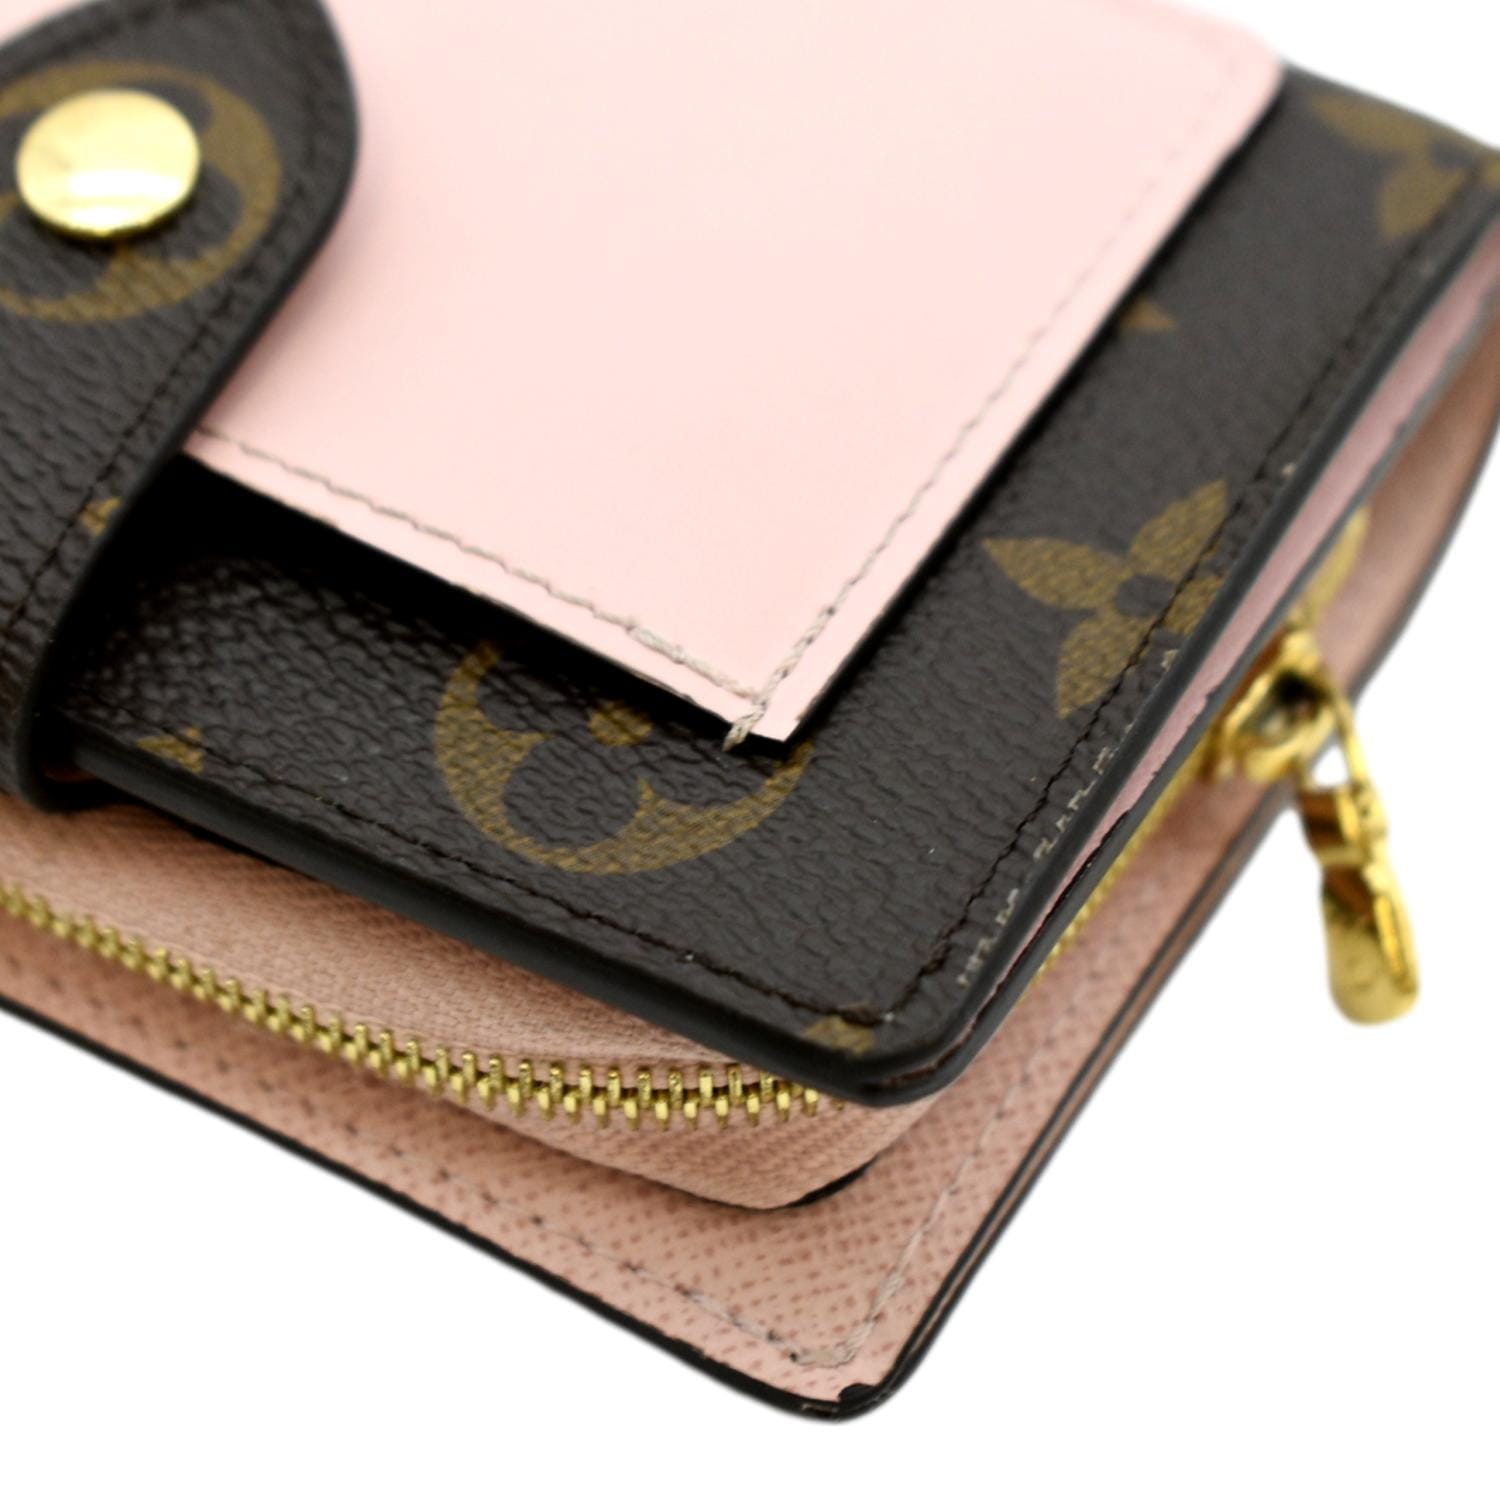 Louis Vuitton, Bags, Louis Vuitton Monogram Canvas Pink Wallet